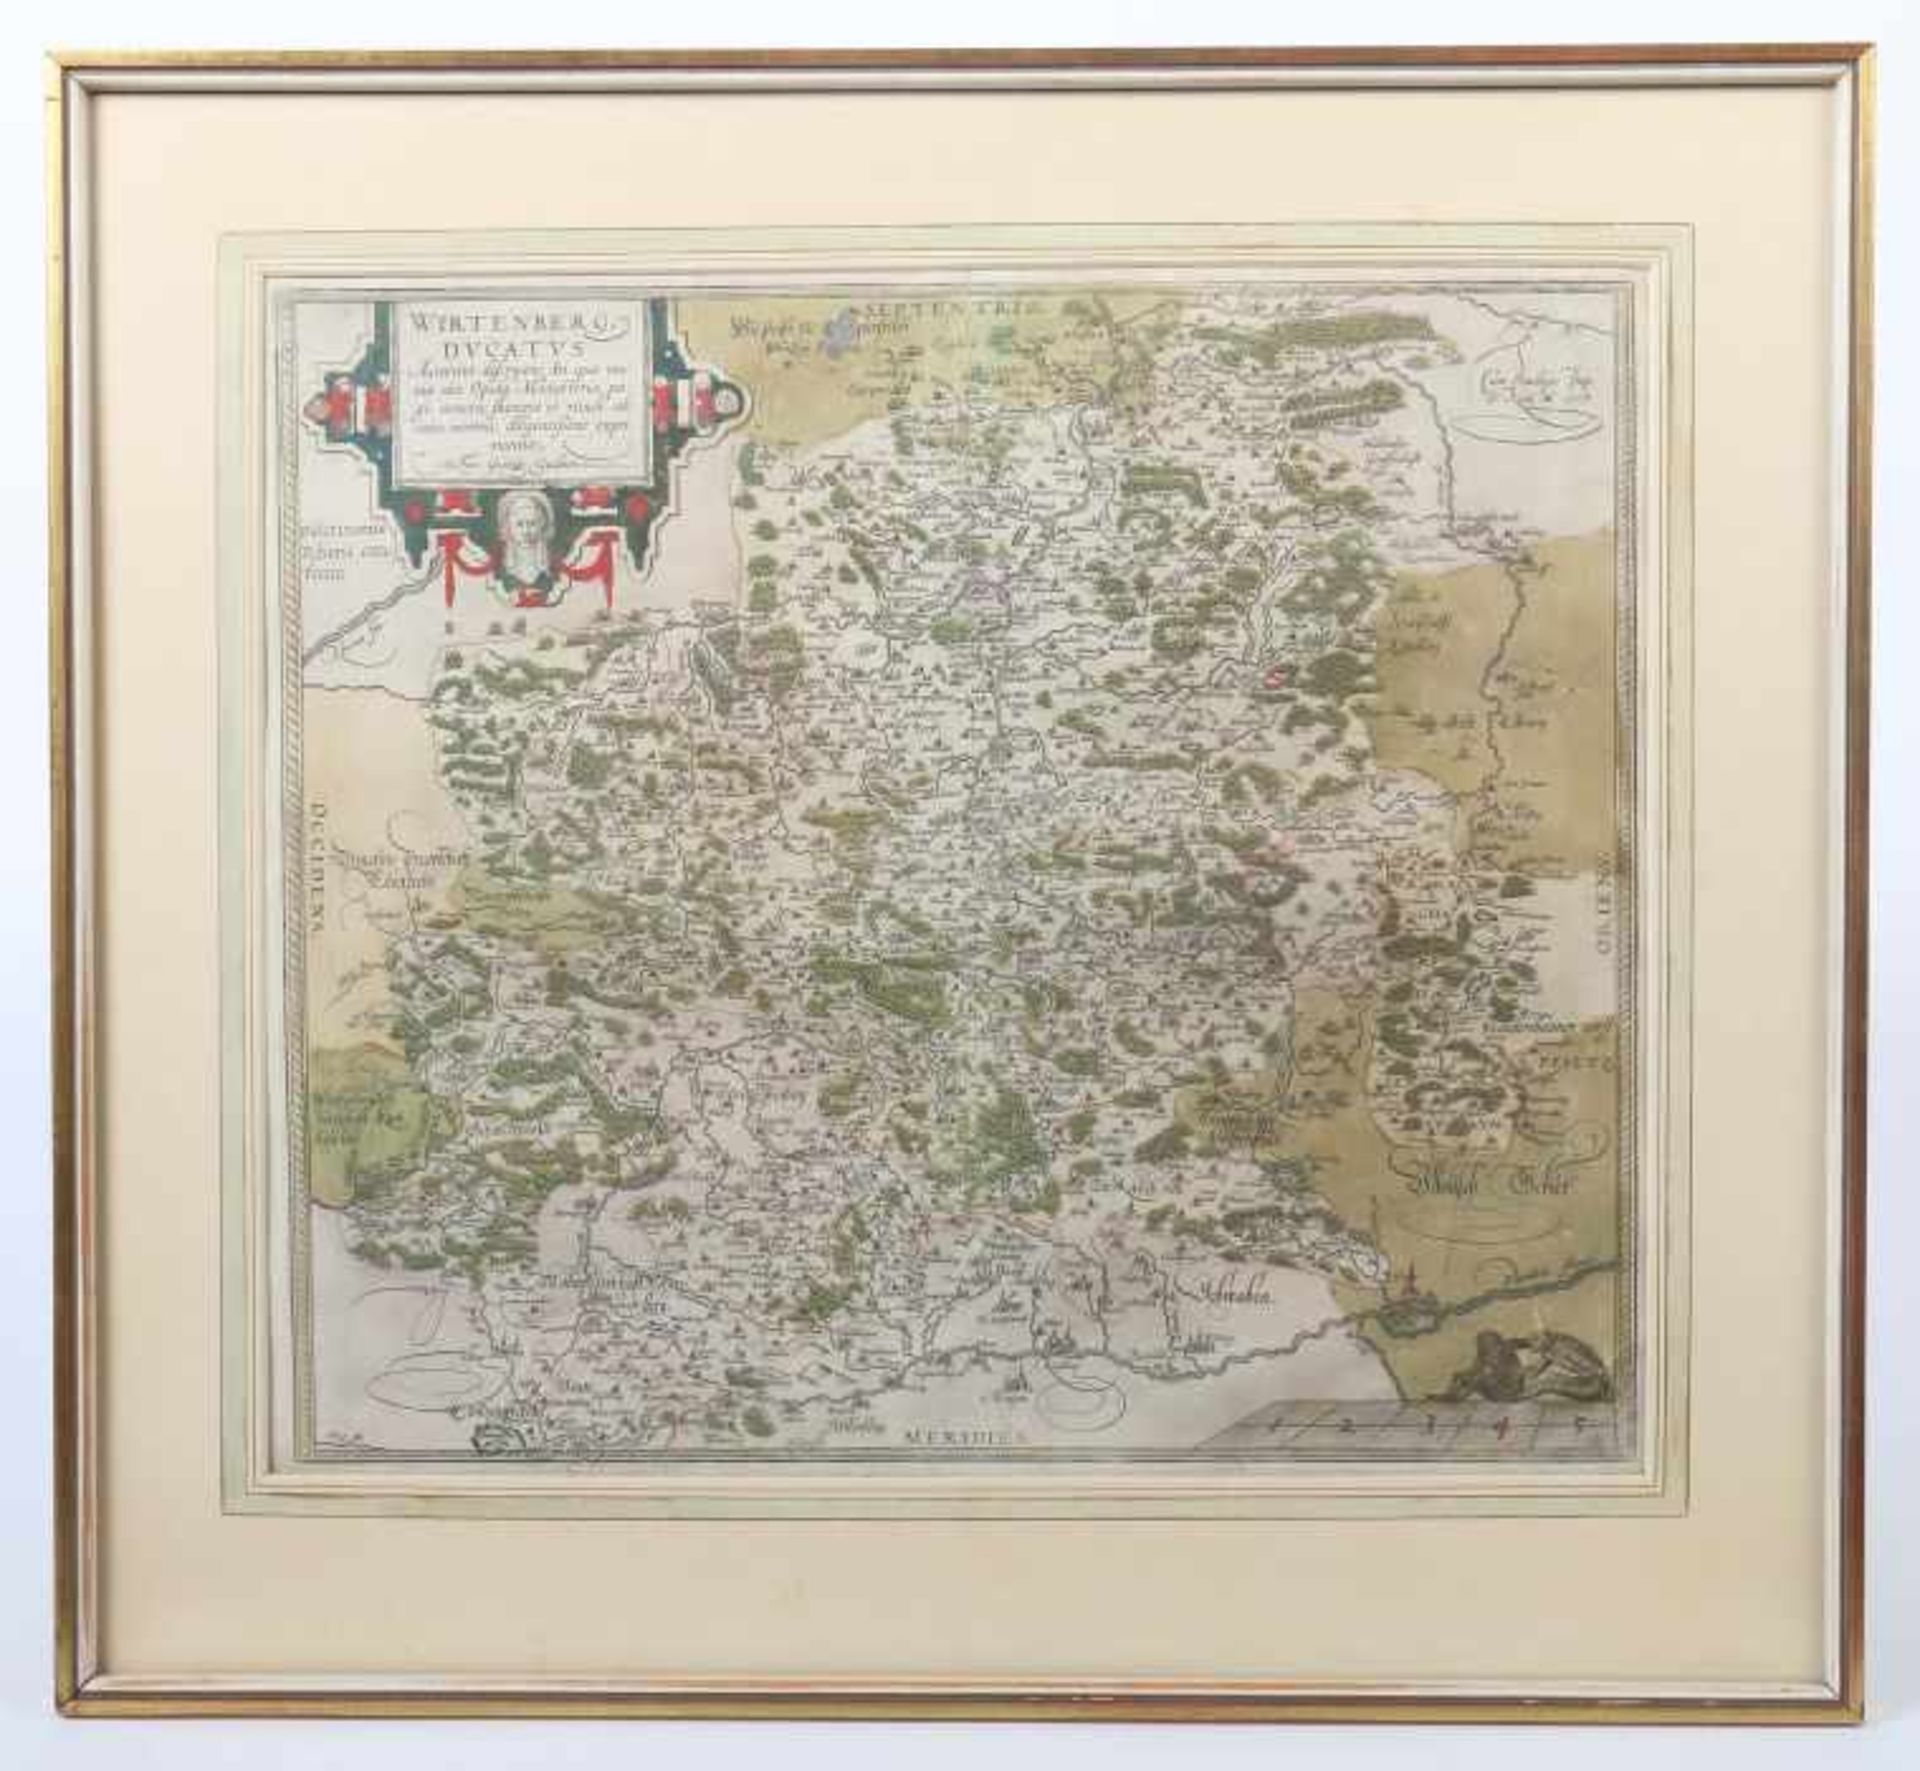 Konvolut Landkarten Württemberg1x Georg Gardner: "Wirtenberg Dvkatus", Ausgabe von Ortelius; 1x - Bild 2 aus 3